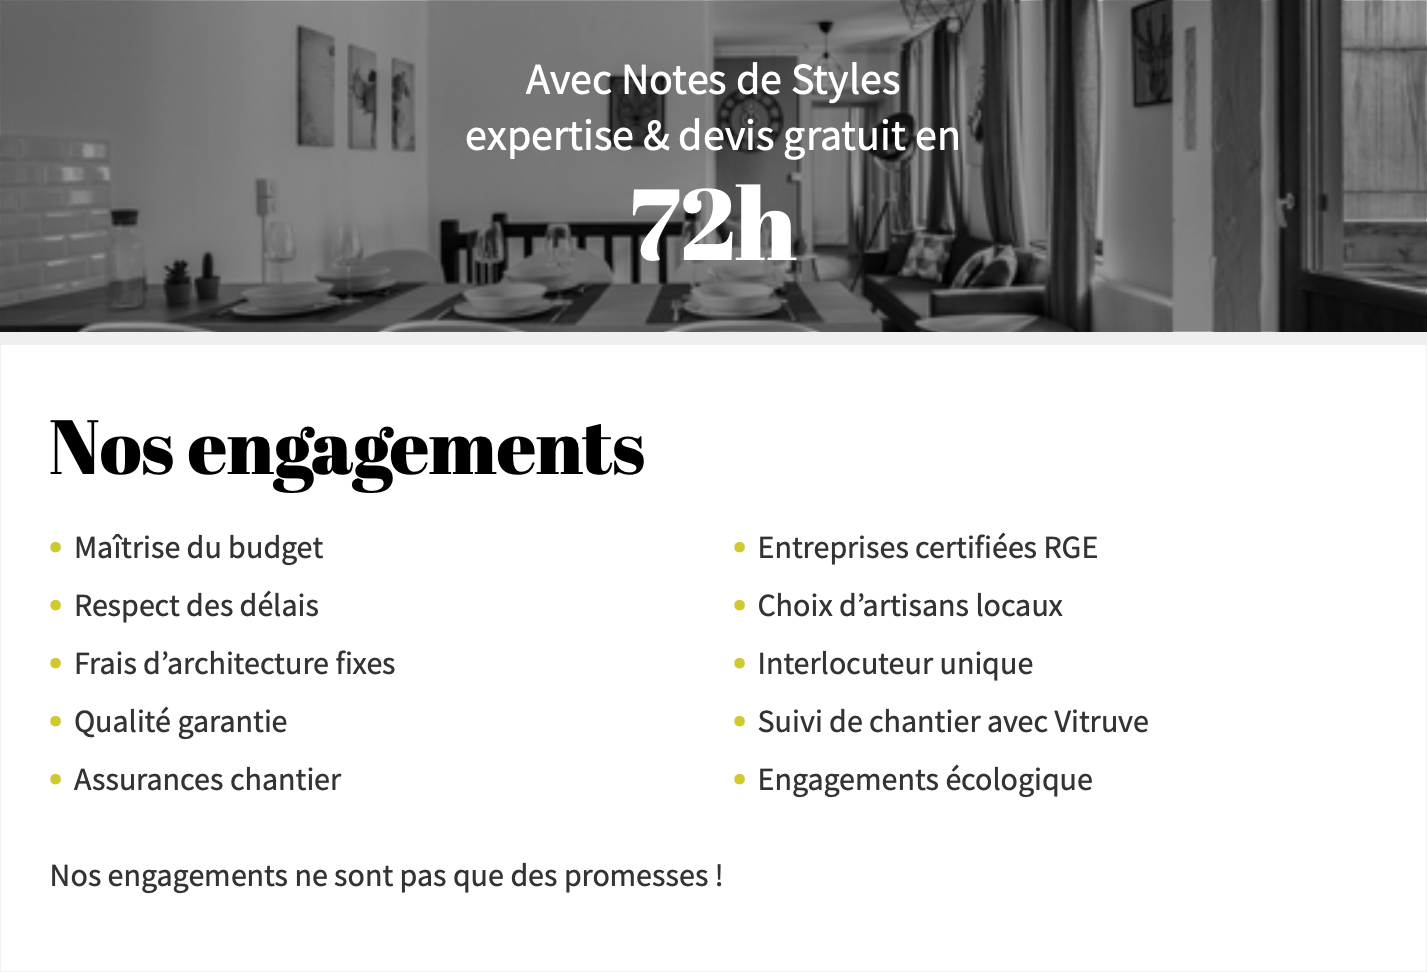 Notes de Styles Thionville - Nos engagements